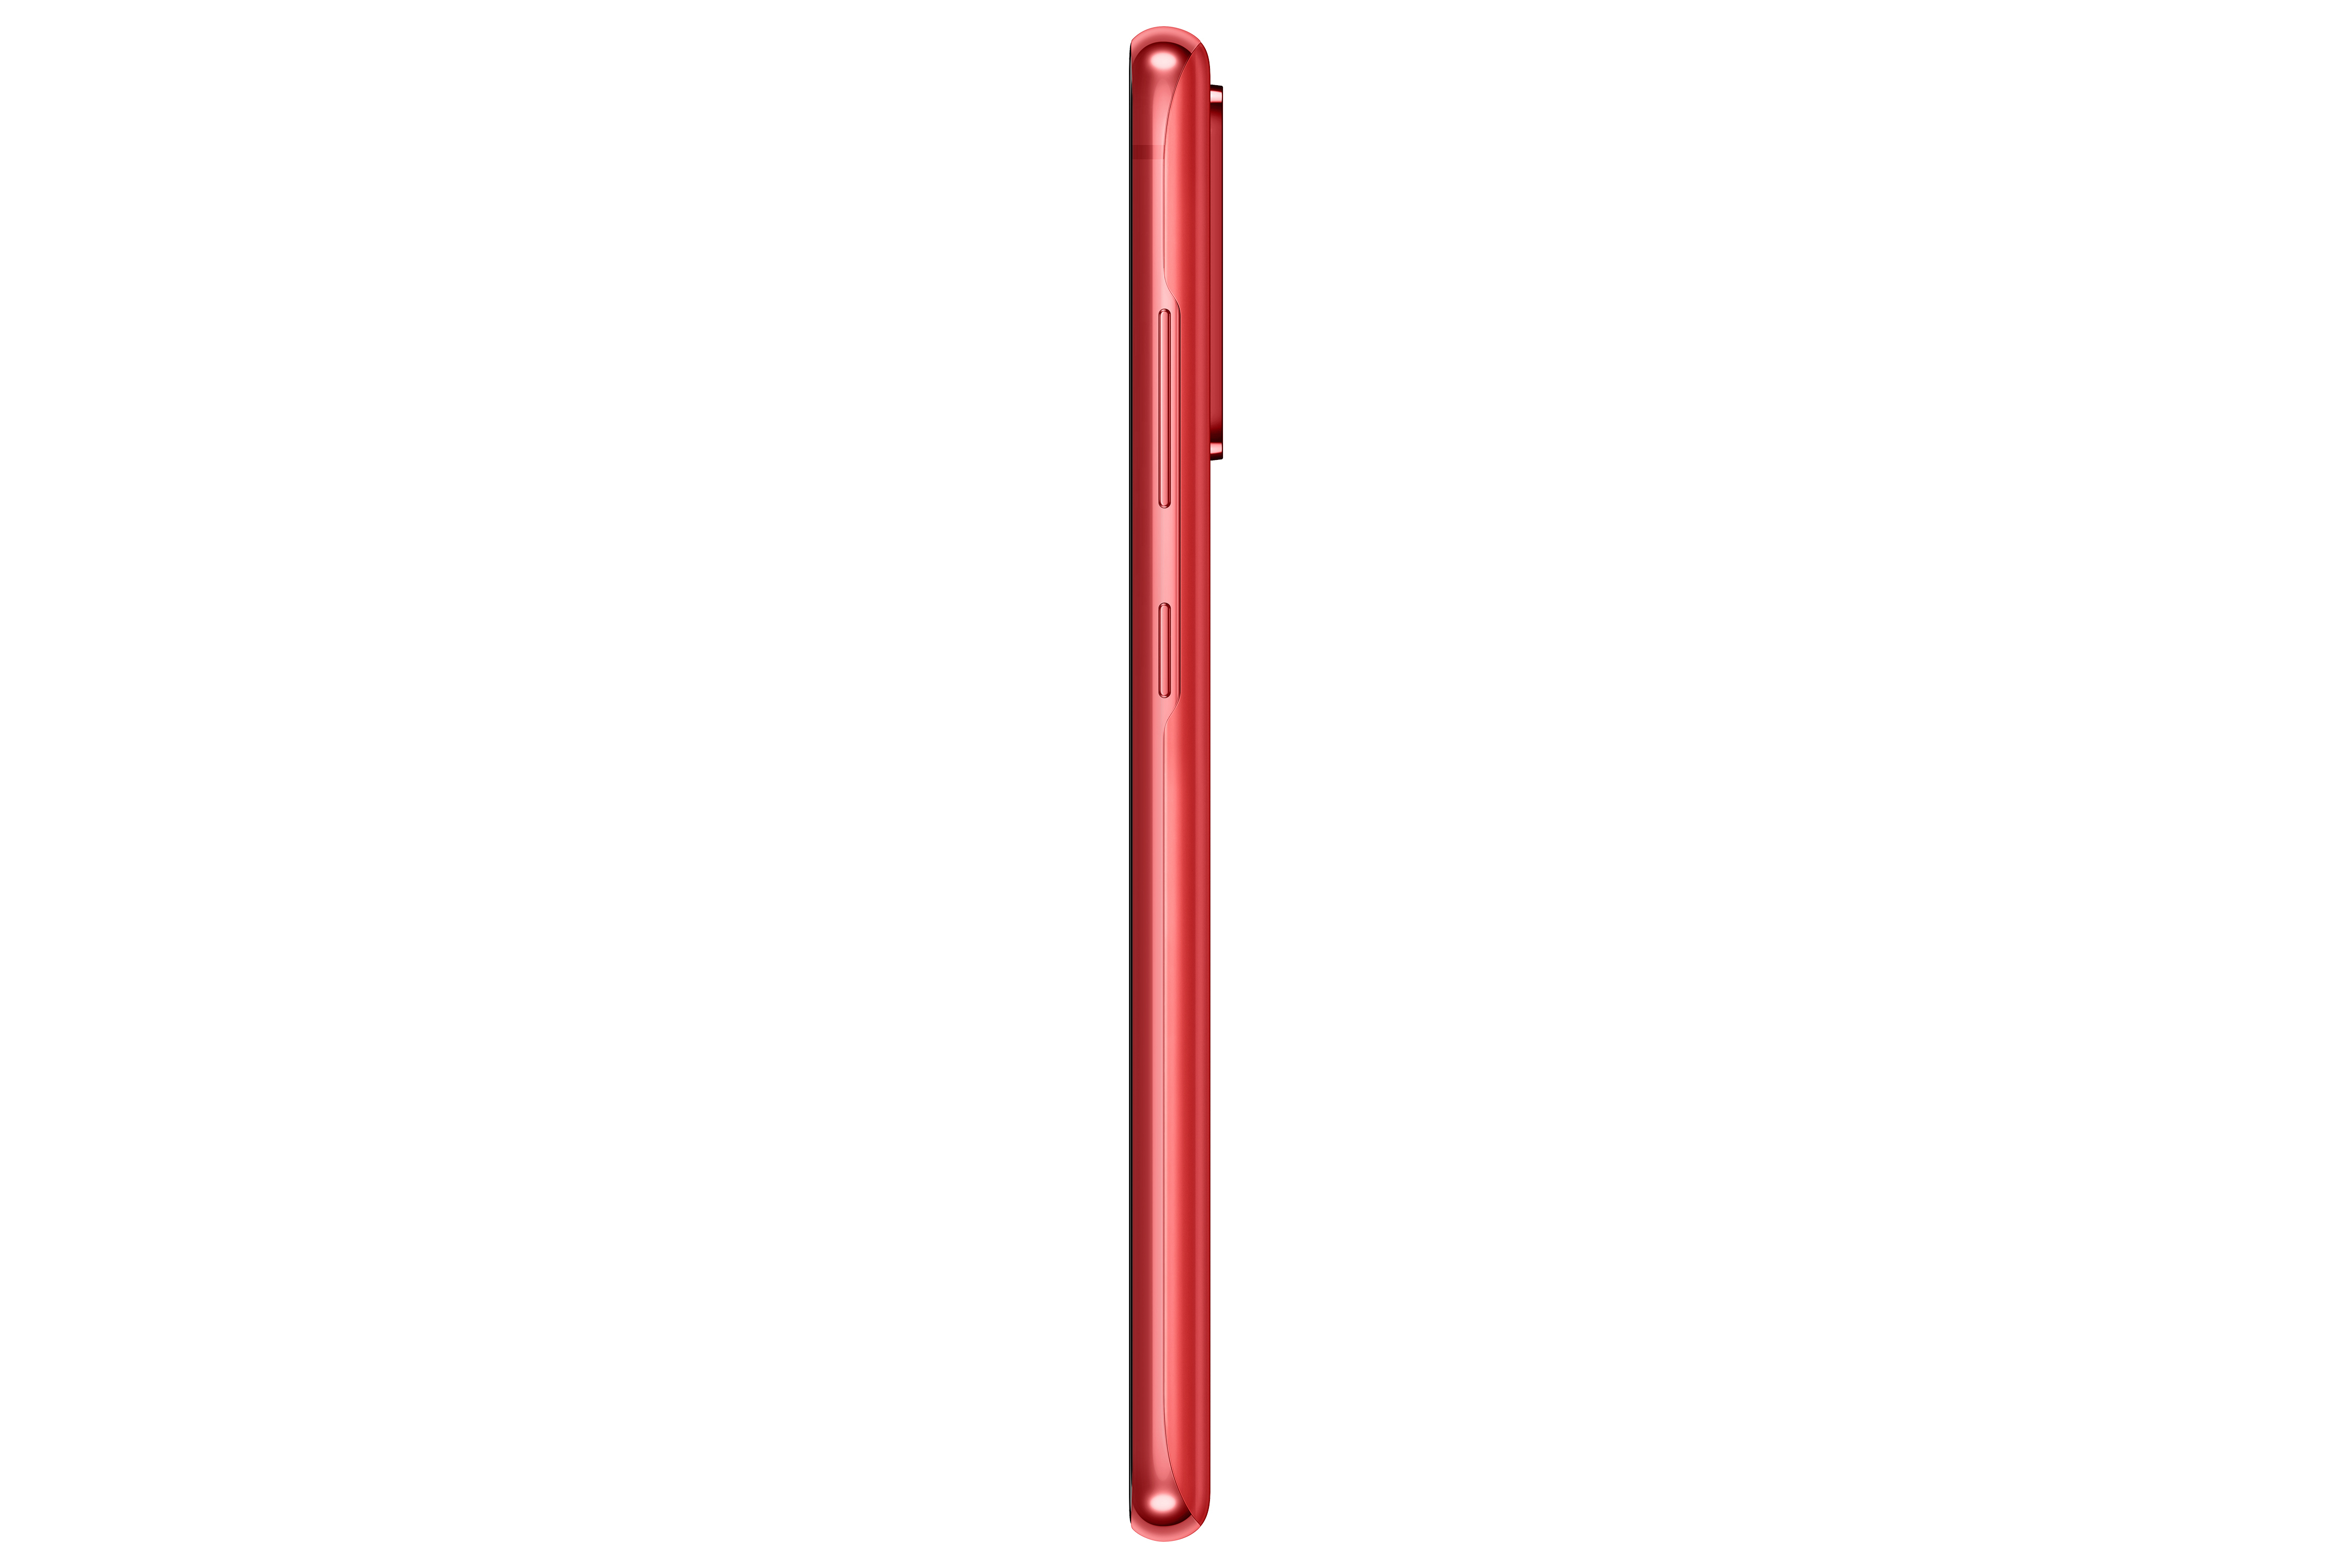 SIM 128 Rosso S20 GB FE Galaxy SAMSUNG Dual